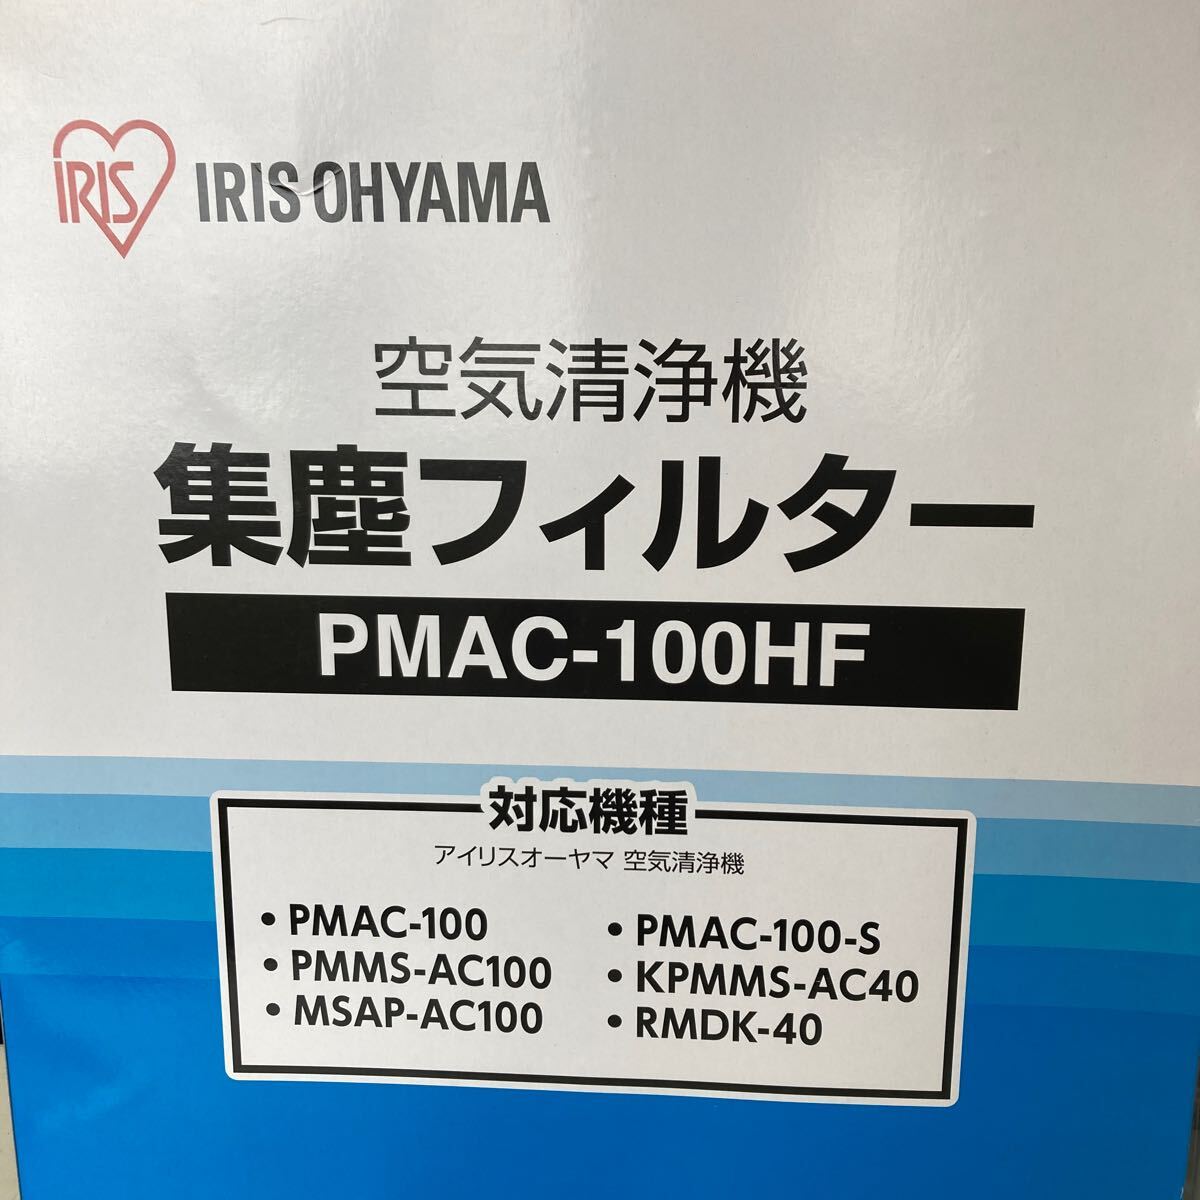 0604c2409 Iris o-yama очиститель воздуха PMAC-100 / PMAC-100-S/MSAP-AC100 соответствует для замены сборник мусор для HEPA фильтр PMAC-100HF ** включение в покупку не возможно **